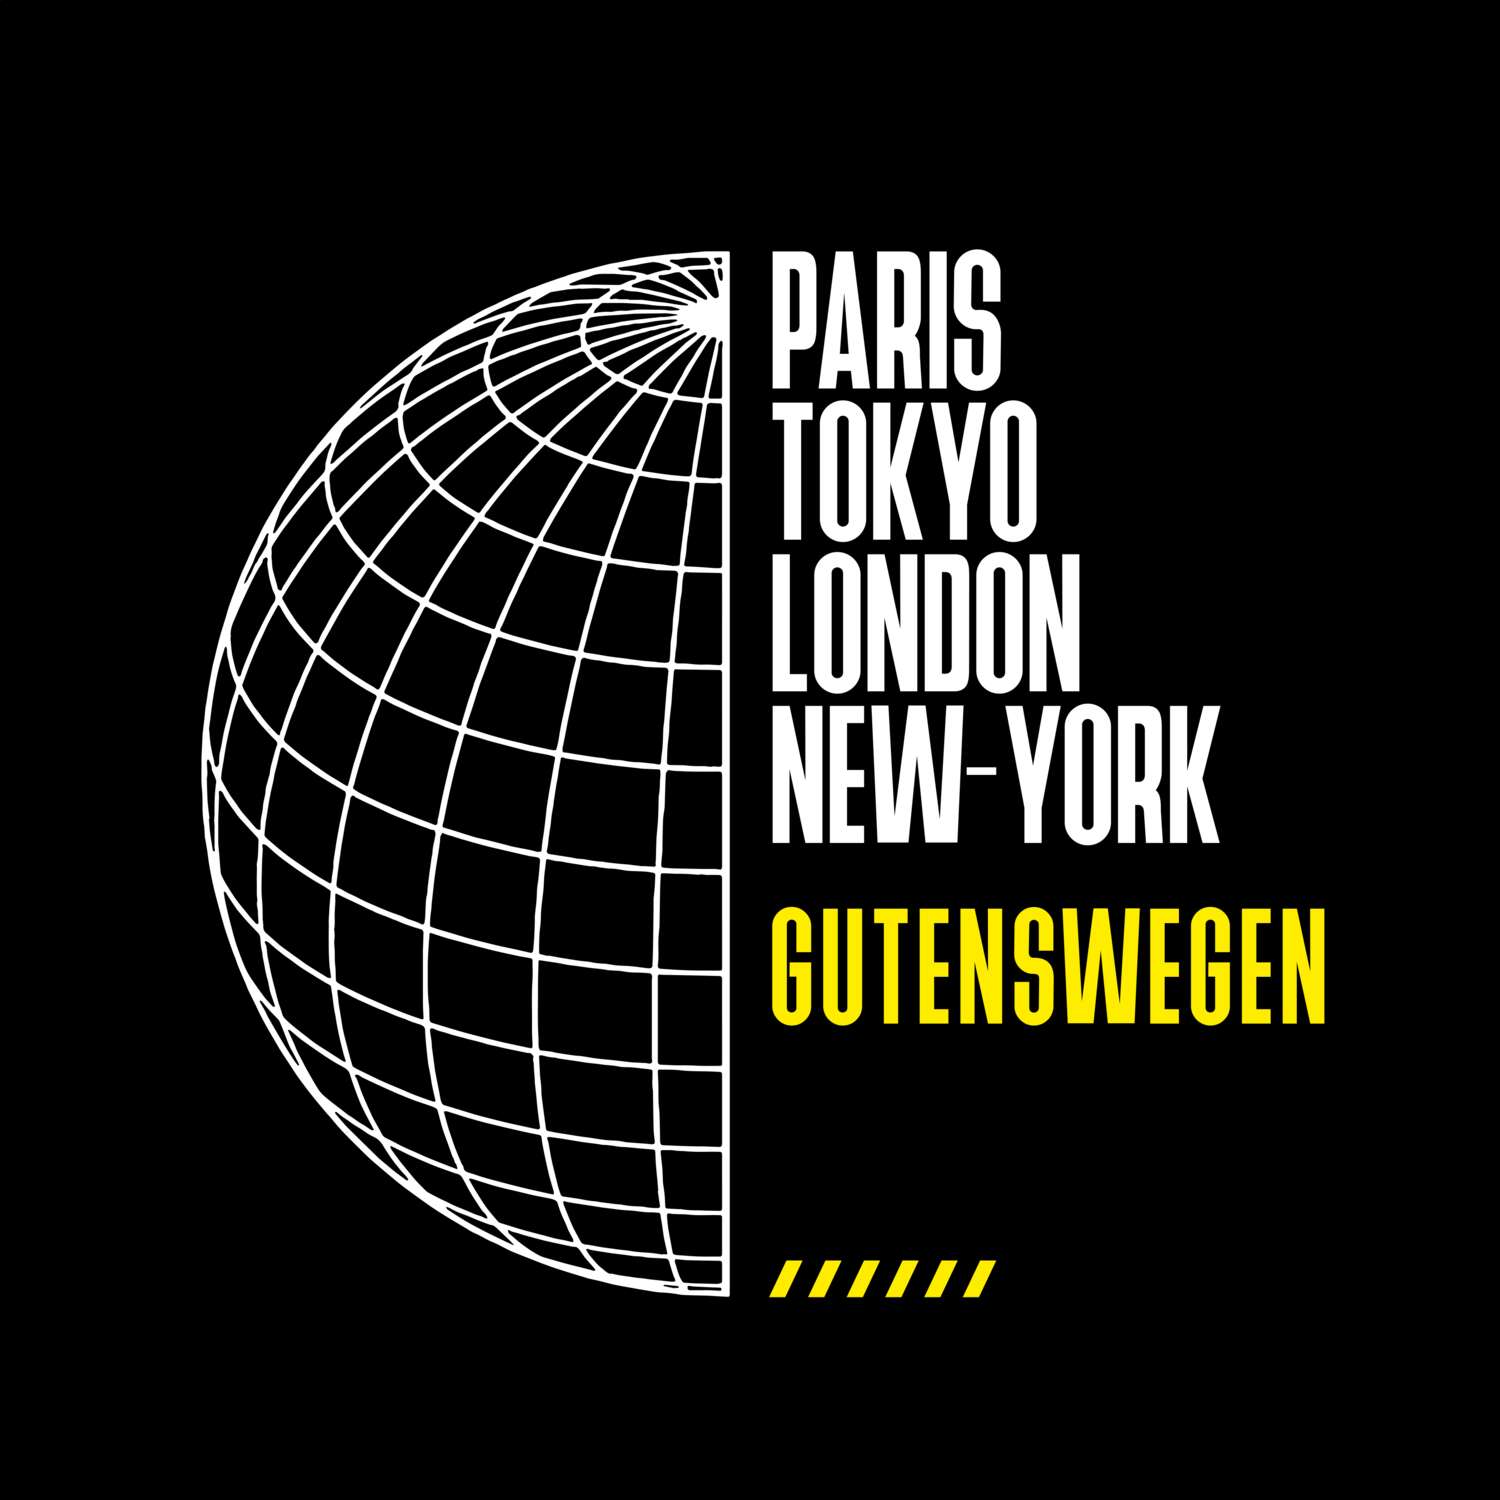 Gutenswegen T-Shirt »Paris Tokyo London«